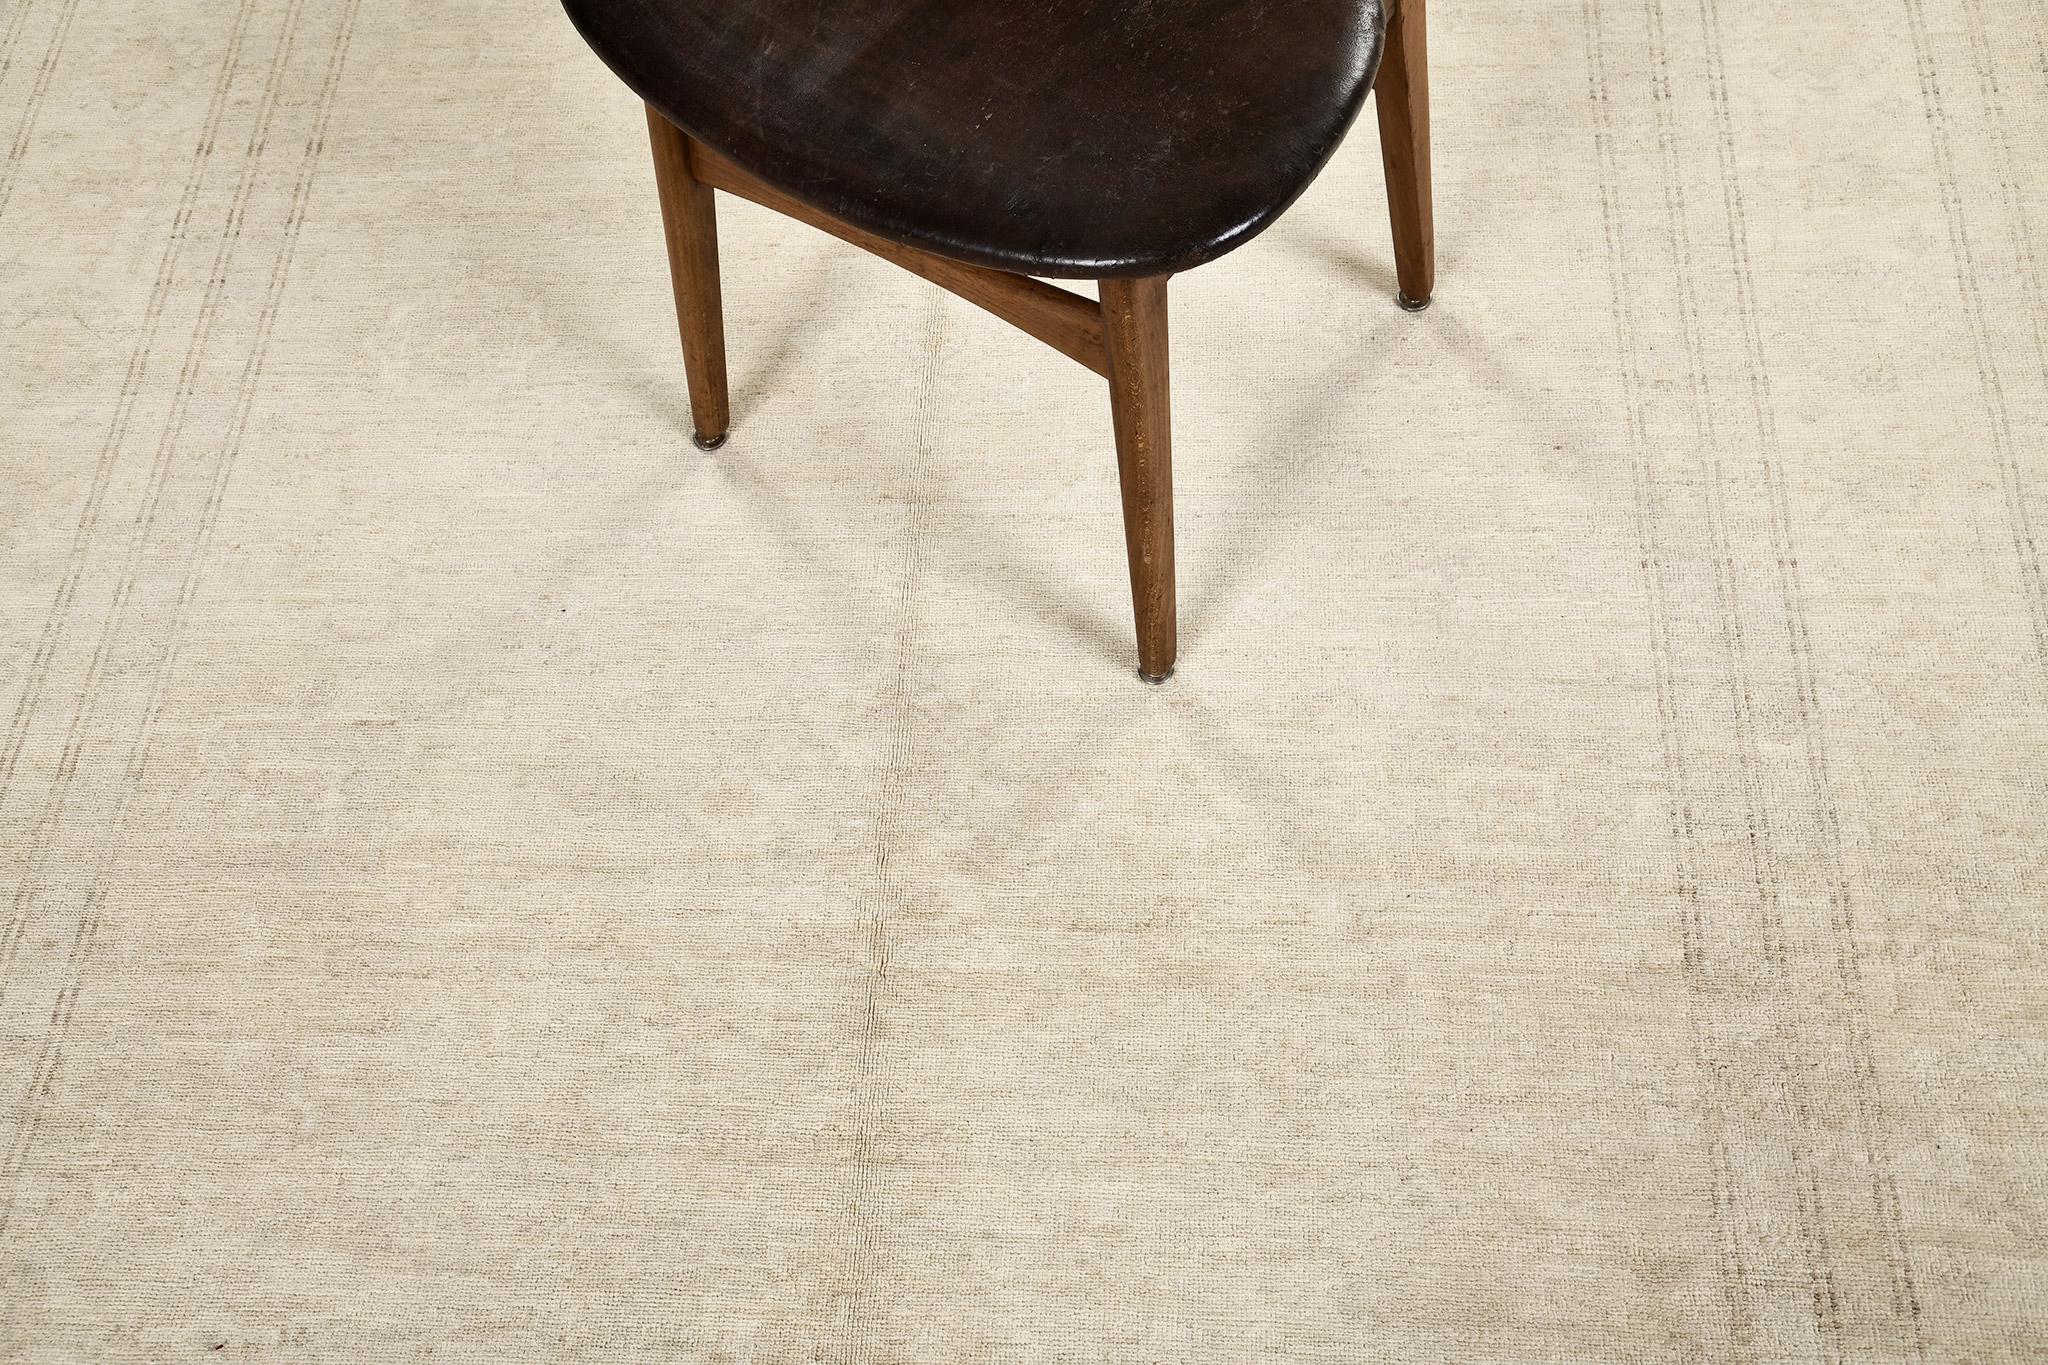 Dieser schlichte, aber stilvolle Teppich von Shirvan Design aus der Kollektion Rapture zeichnet sich durch das majestätische zentrale Medaillon aus. Ein staubiges Graugrün passt perfekt zu einer neutral getönten Wand und zu Farbtönen, die das